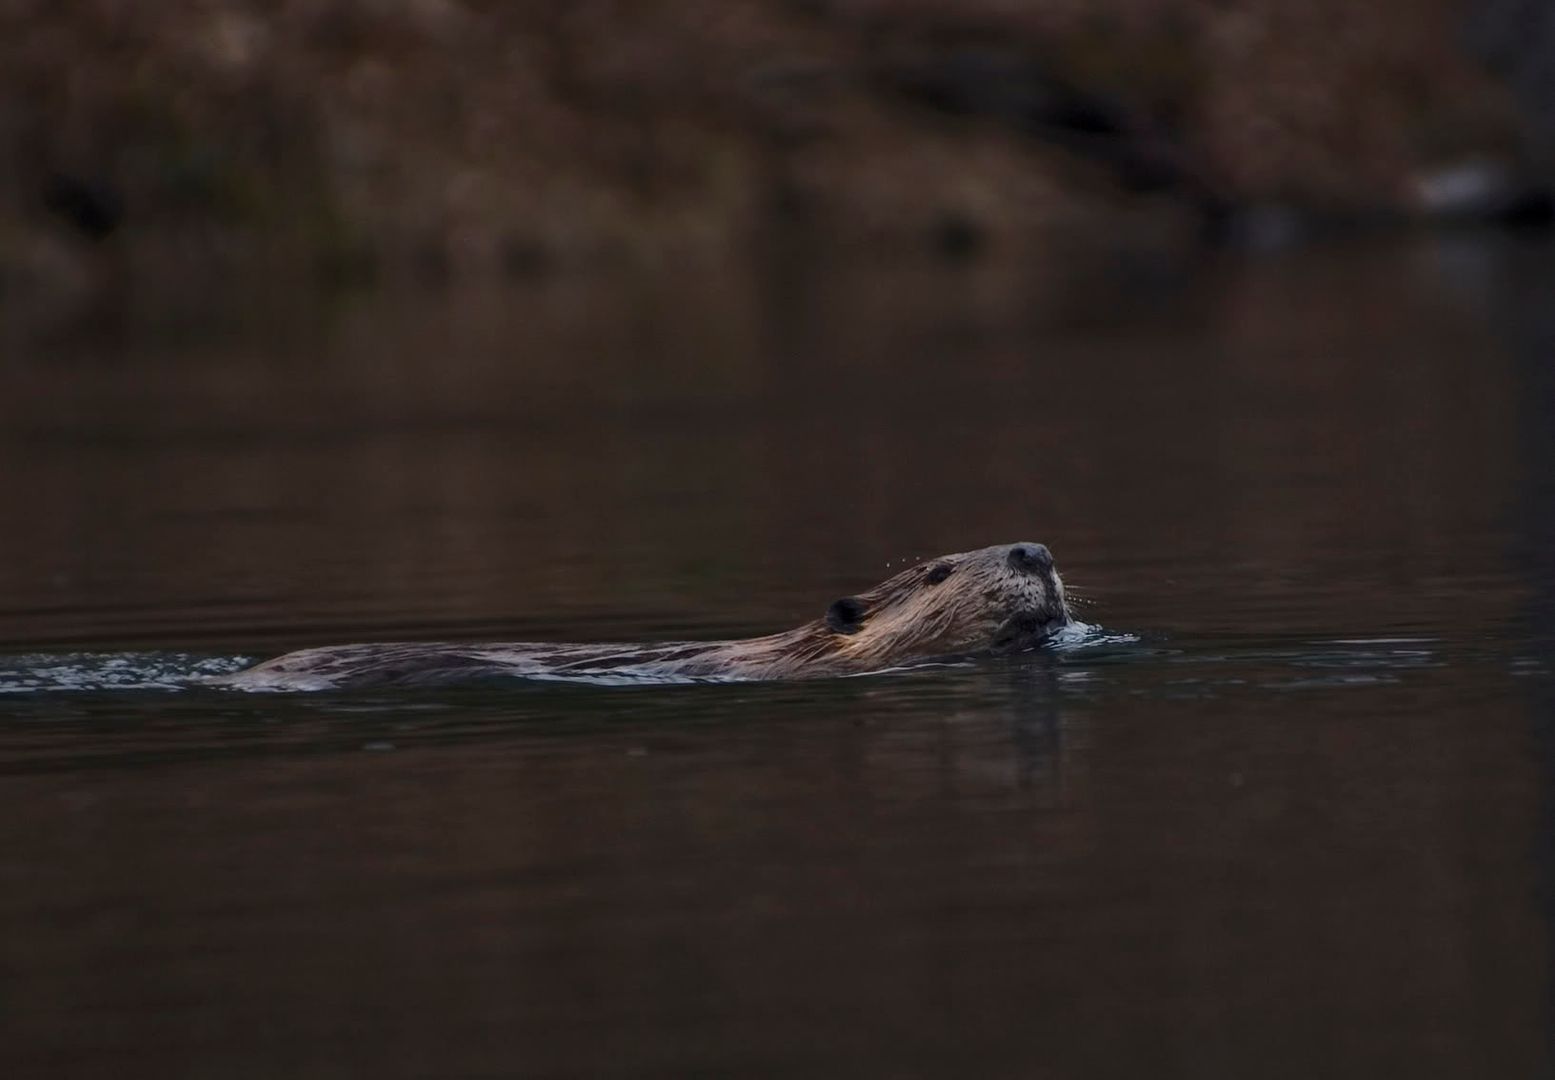 beaverswimming2.jpg